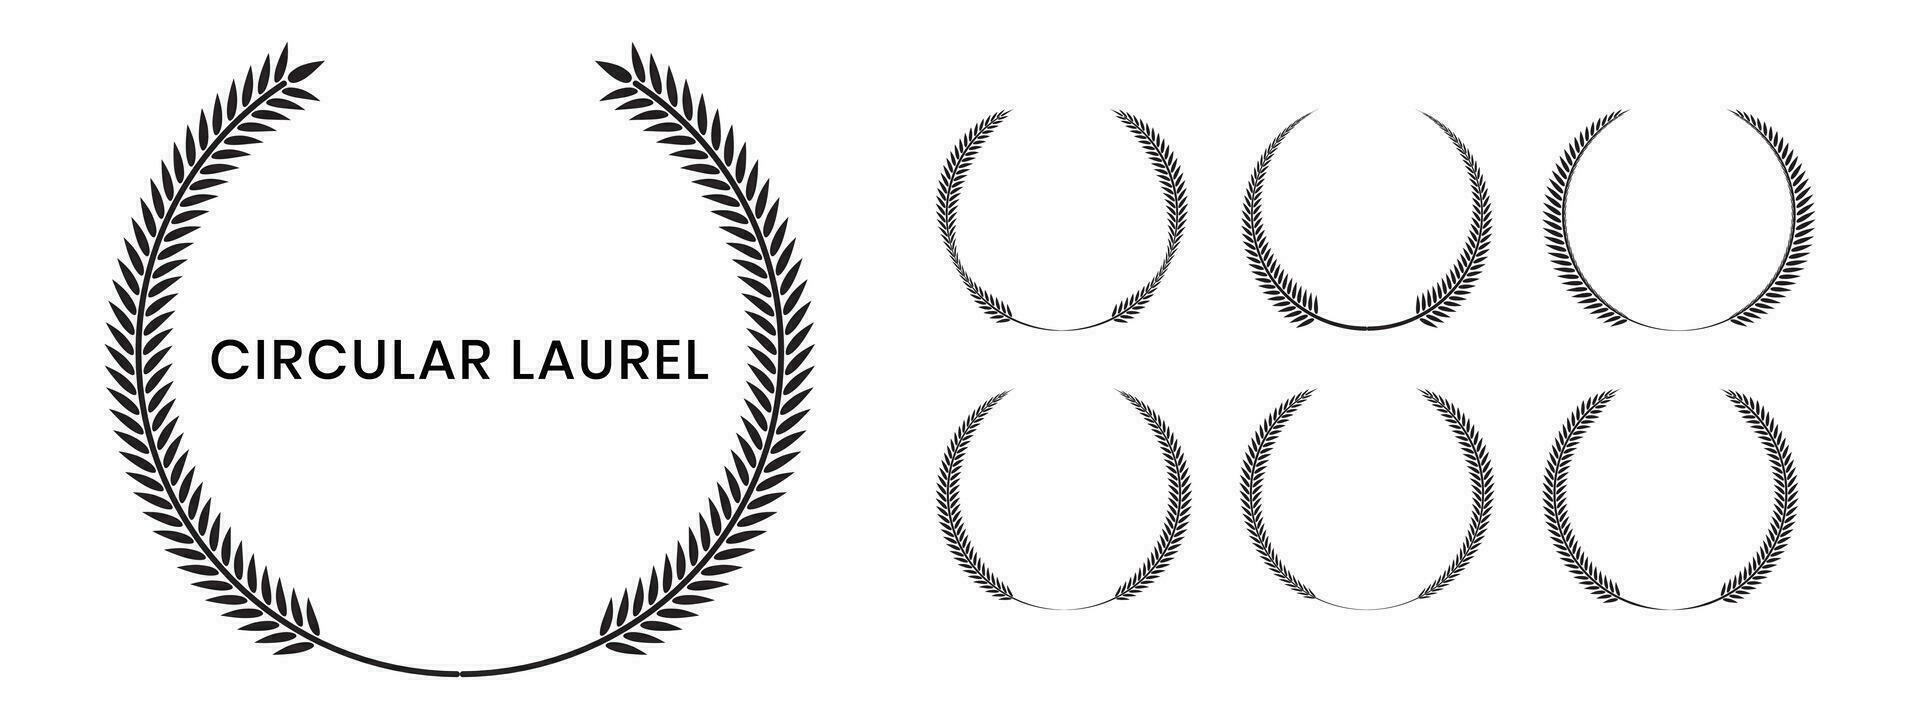 conjunto de negro silueta circular laurel foliar, trigo y roble coronas representando un otorgar, logro, heráldica, nobleza en blanco antecedentes. vector emblema.